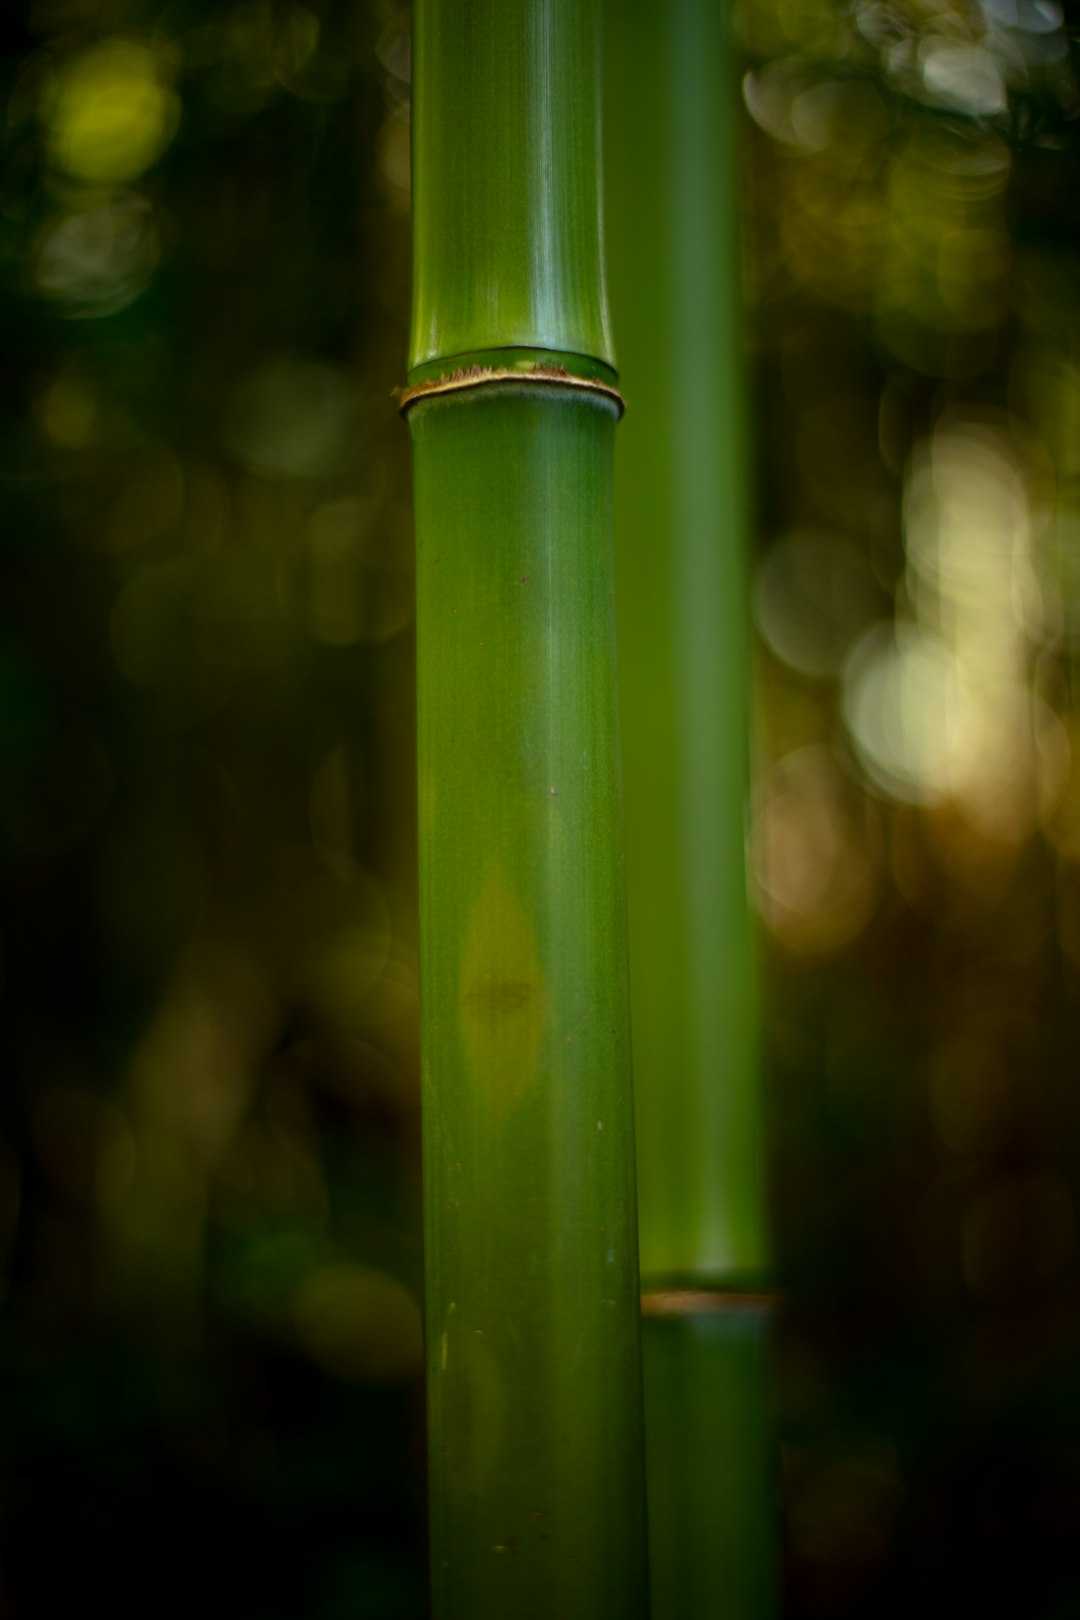 bamboo trees